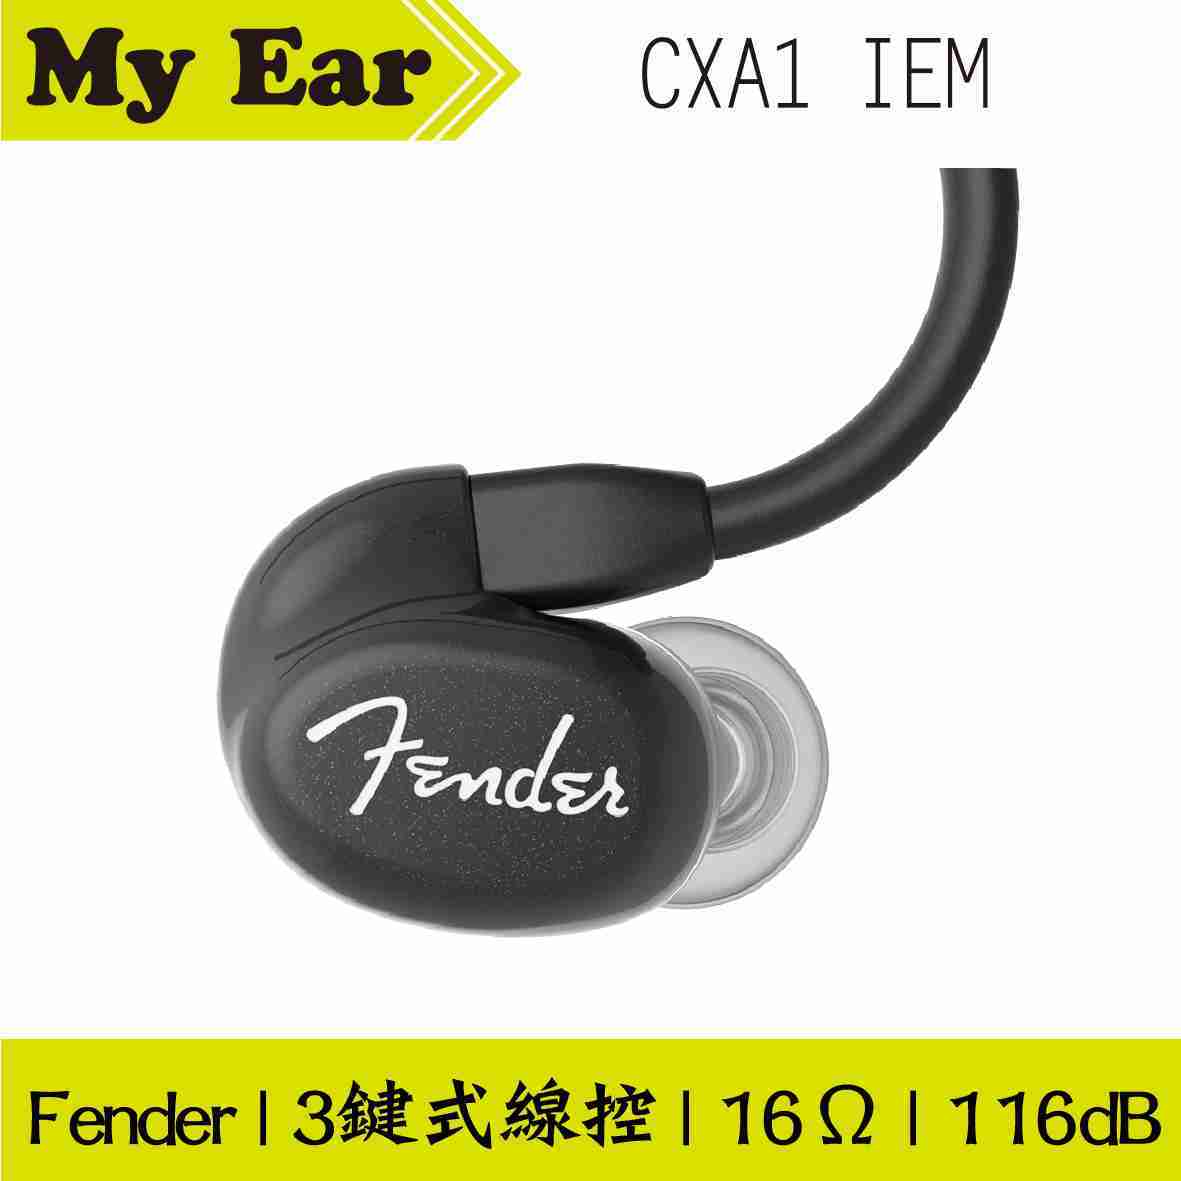 Fender CXA1 IEM 黑色 可通話 線控式 耳道式耳機 | My Ear 耳機專門店